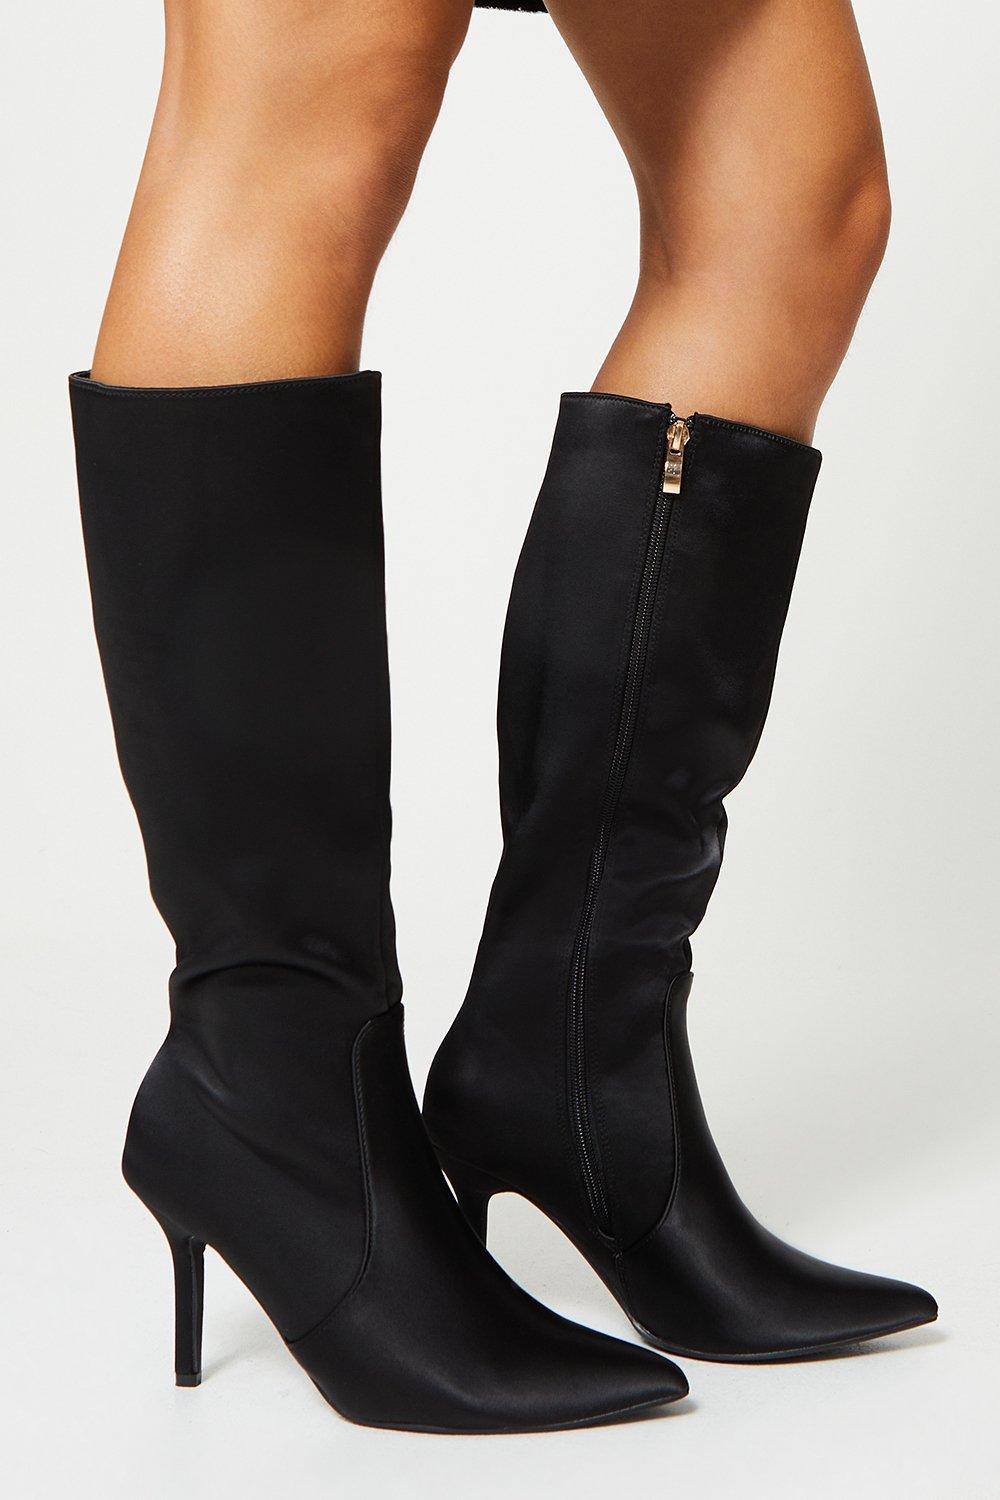 Teya Satin High Heel Pointed Knee Boots - Black